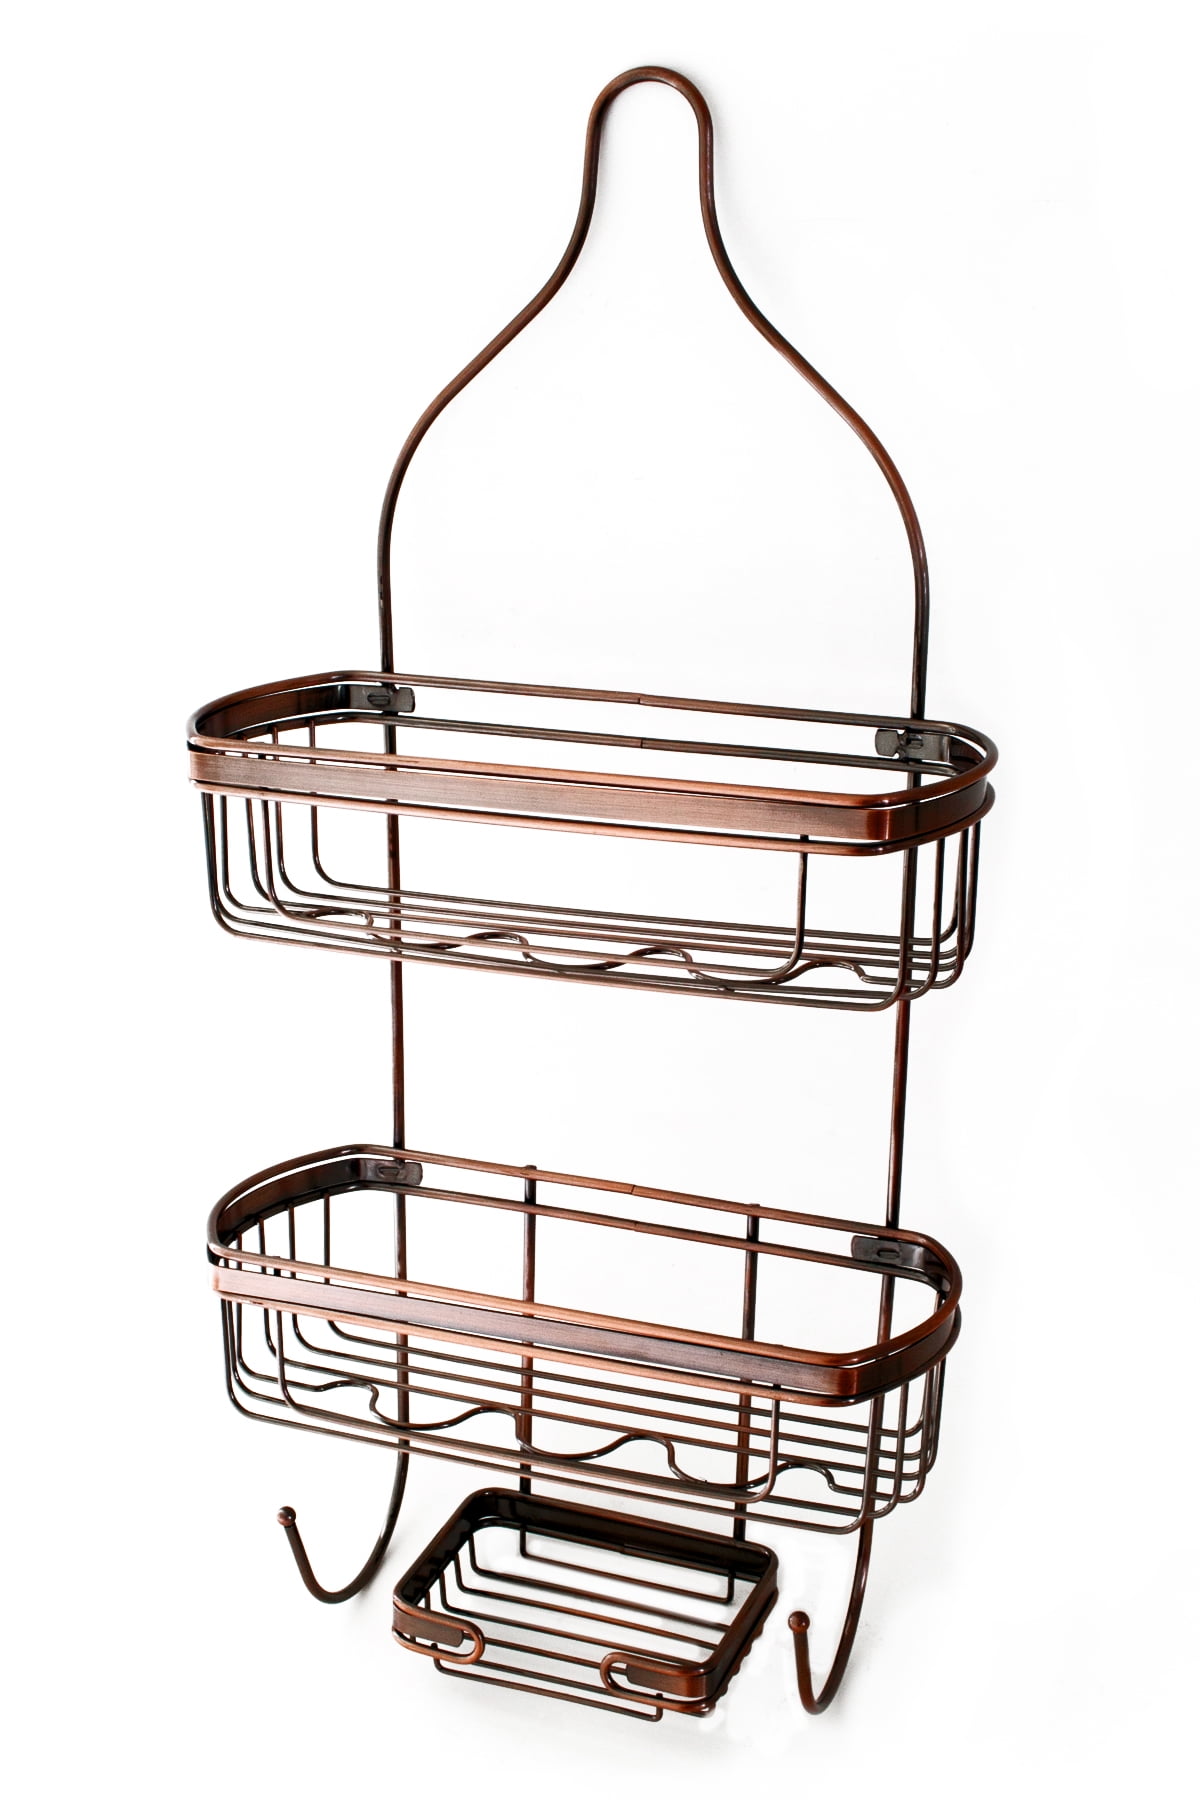 Global Phoenix 2 Tier Shower Caddy Shelf Holder Bathroom Kitchen Storage  Rack Basket